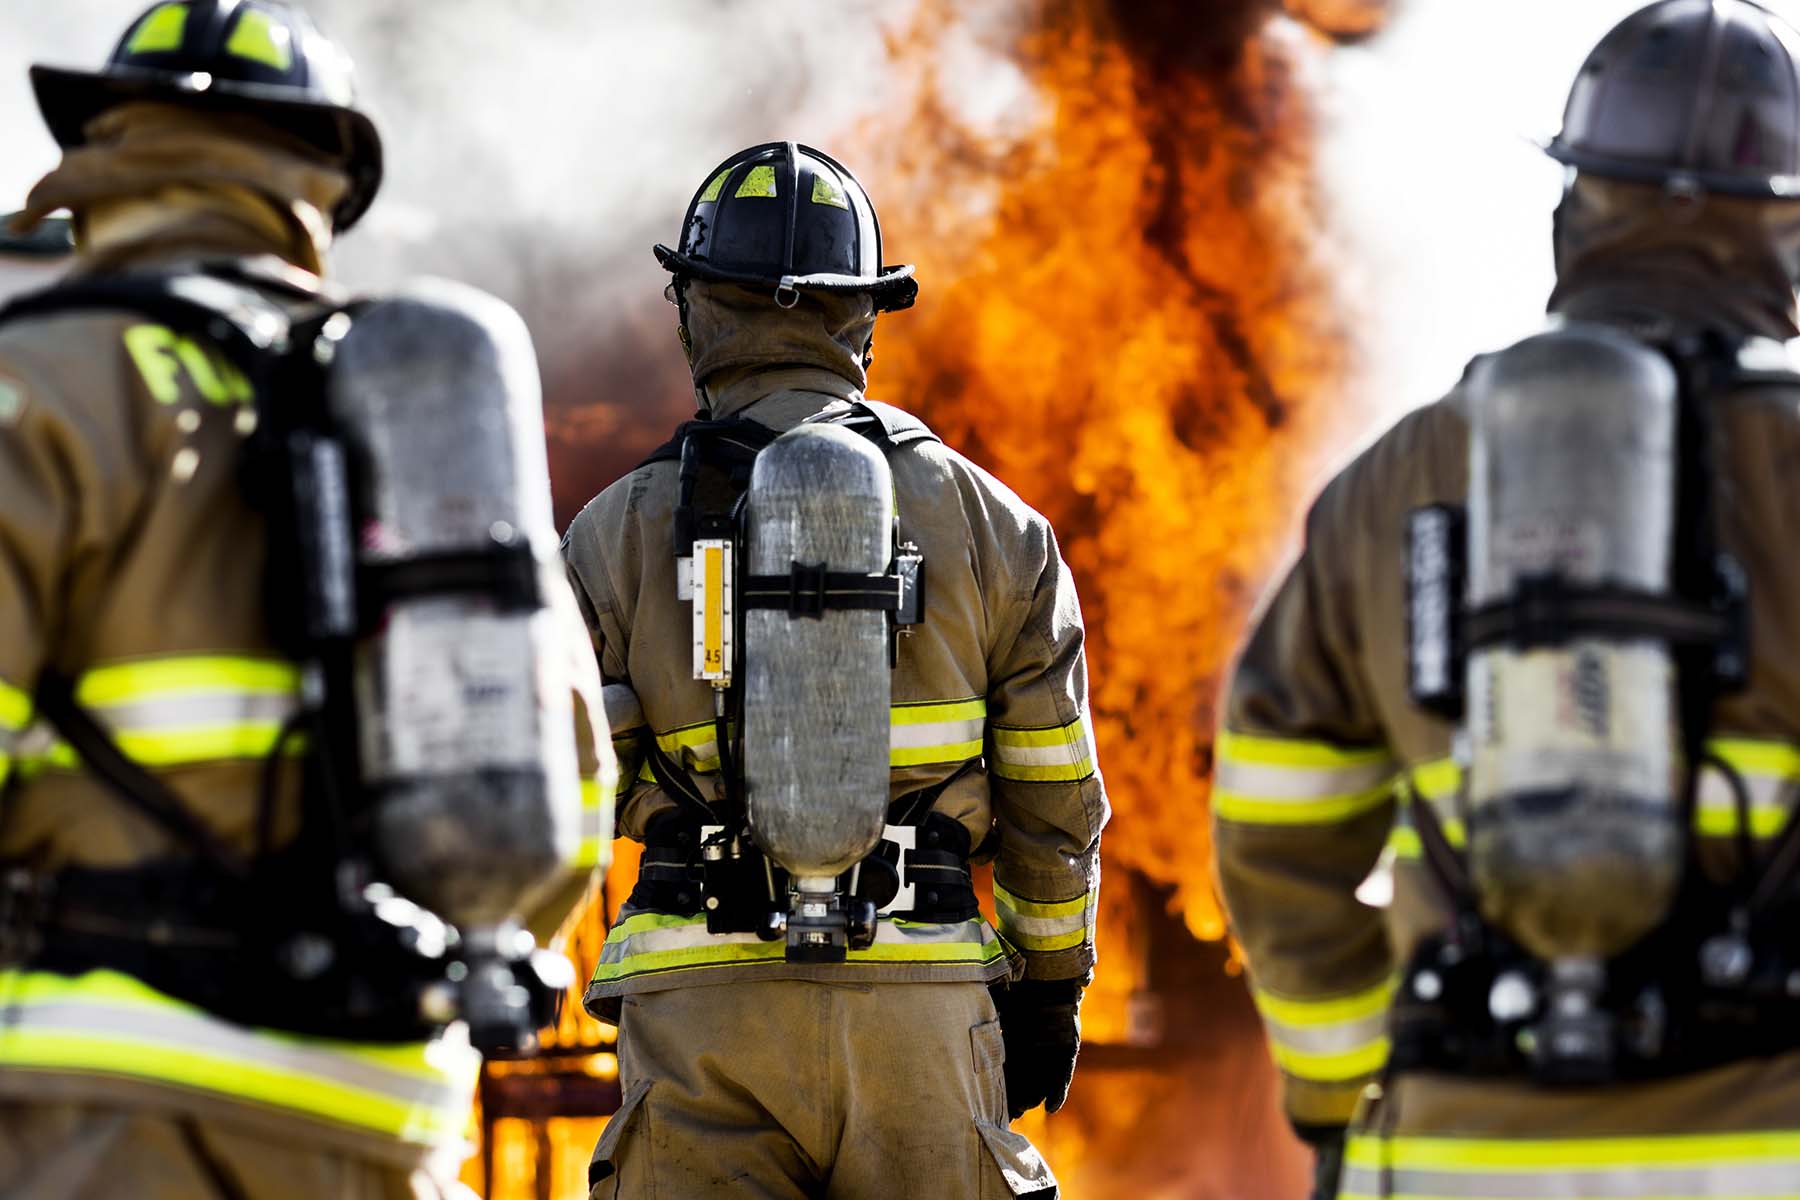 Fire Fighting Equipment & Firefighter Gear - Emergency Responder Products -  Emergency Responder Products